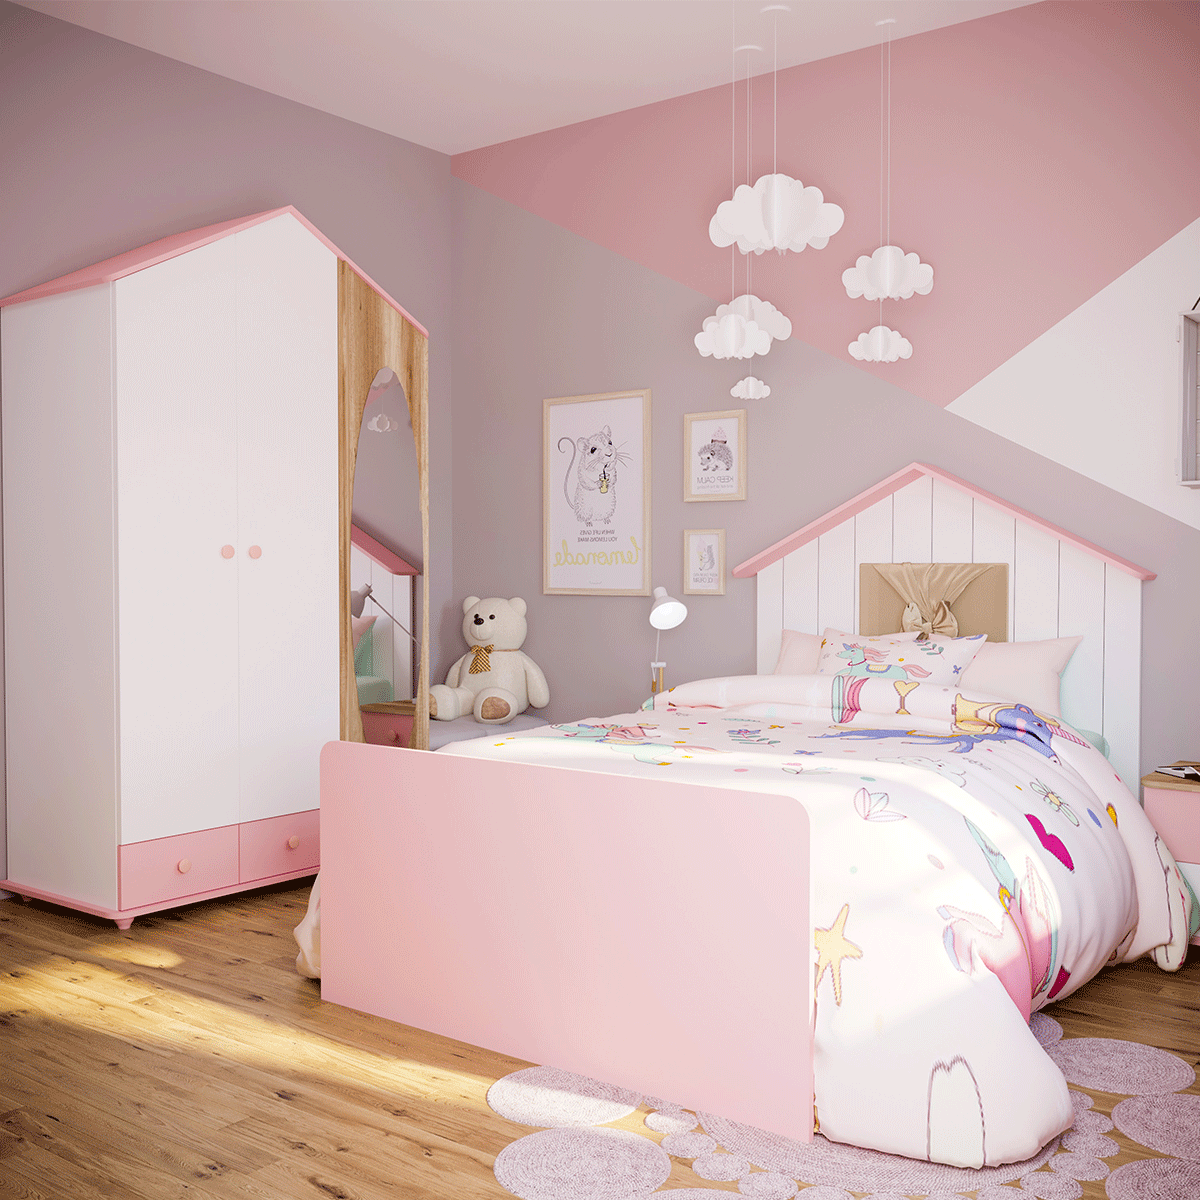 Kids bedrooms